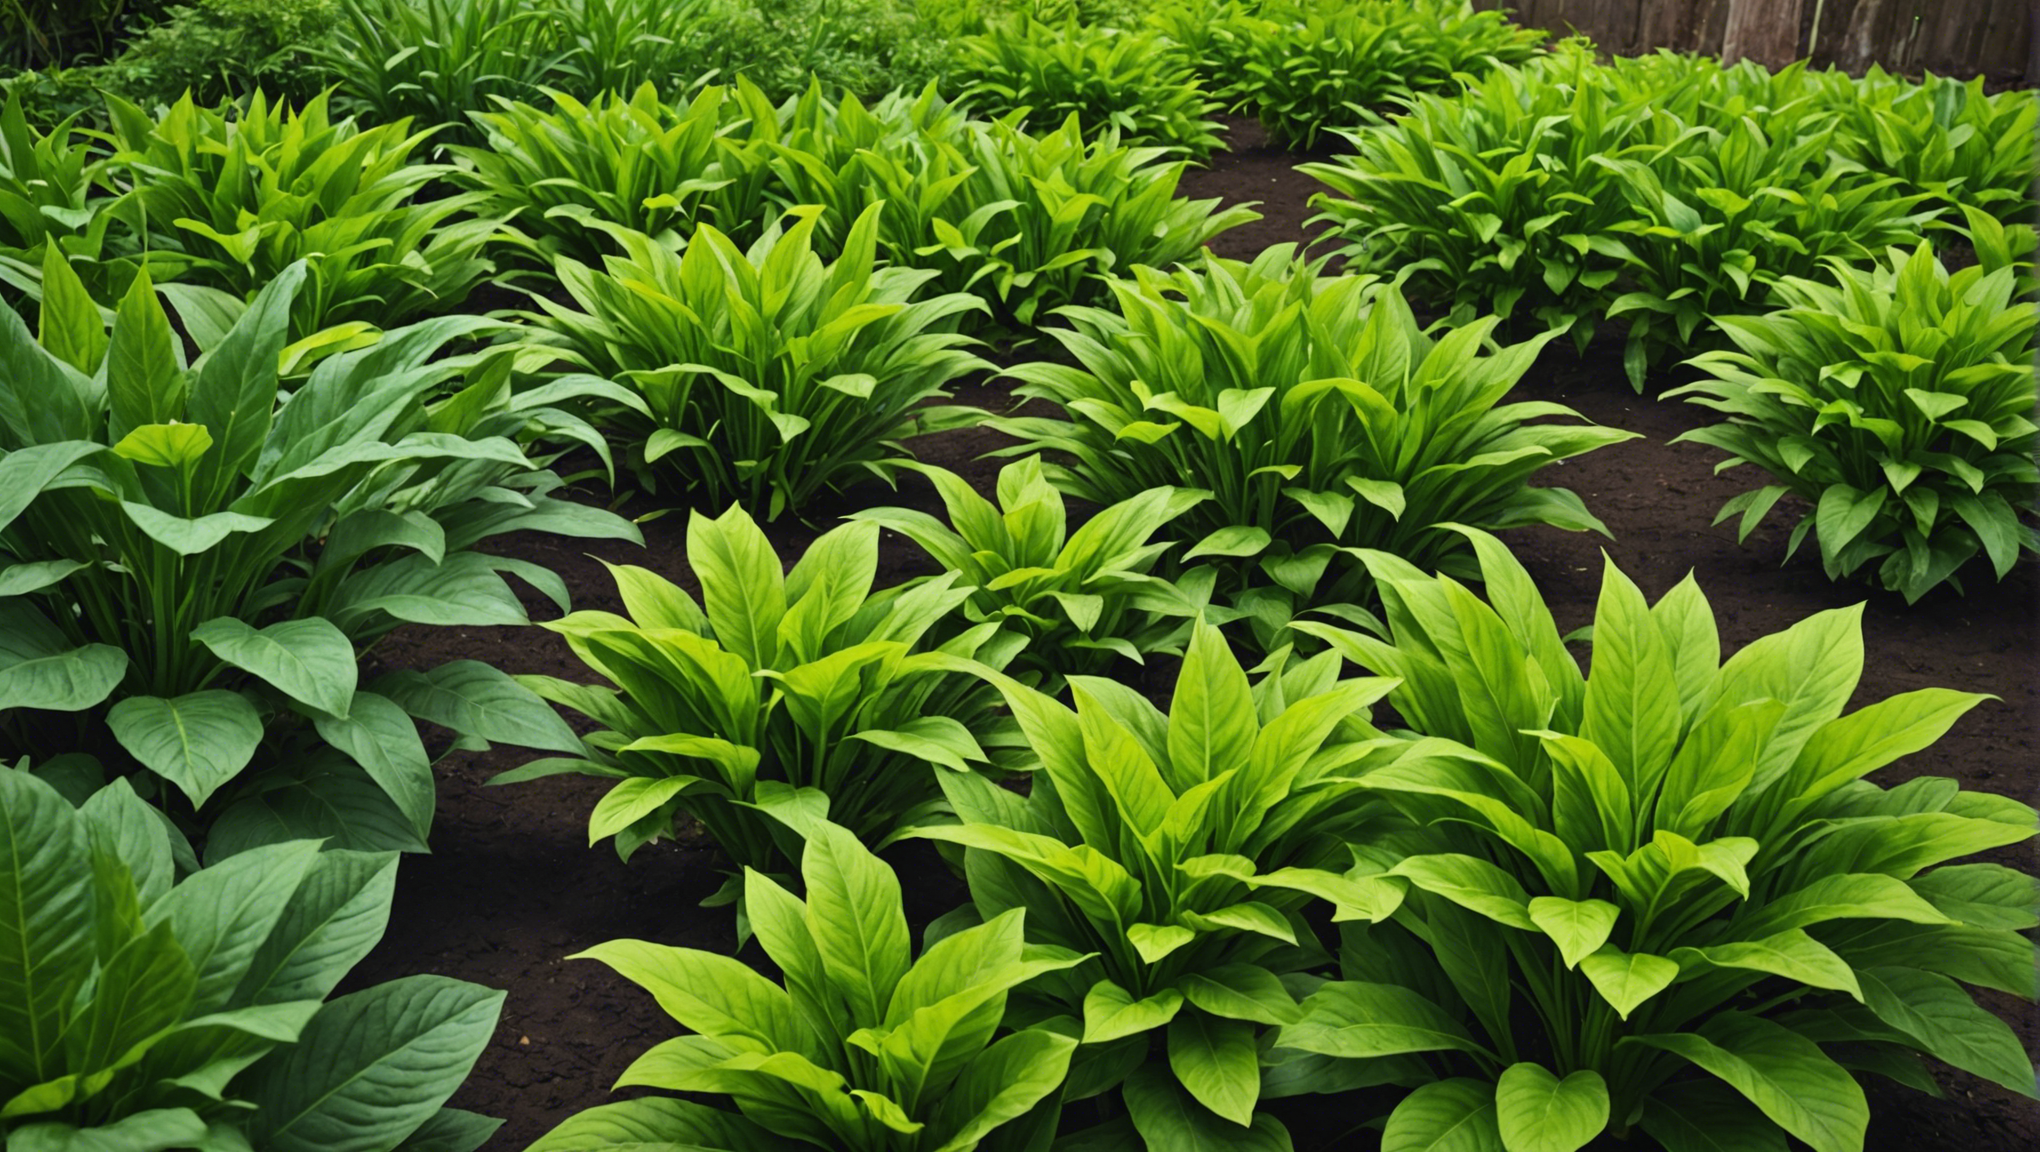 découvrez comment utiliser un fertilisant naturel pour favoriser la croissance luxuriante de vos plantes, sans recourir à l'utilisation de produits chimiques.